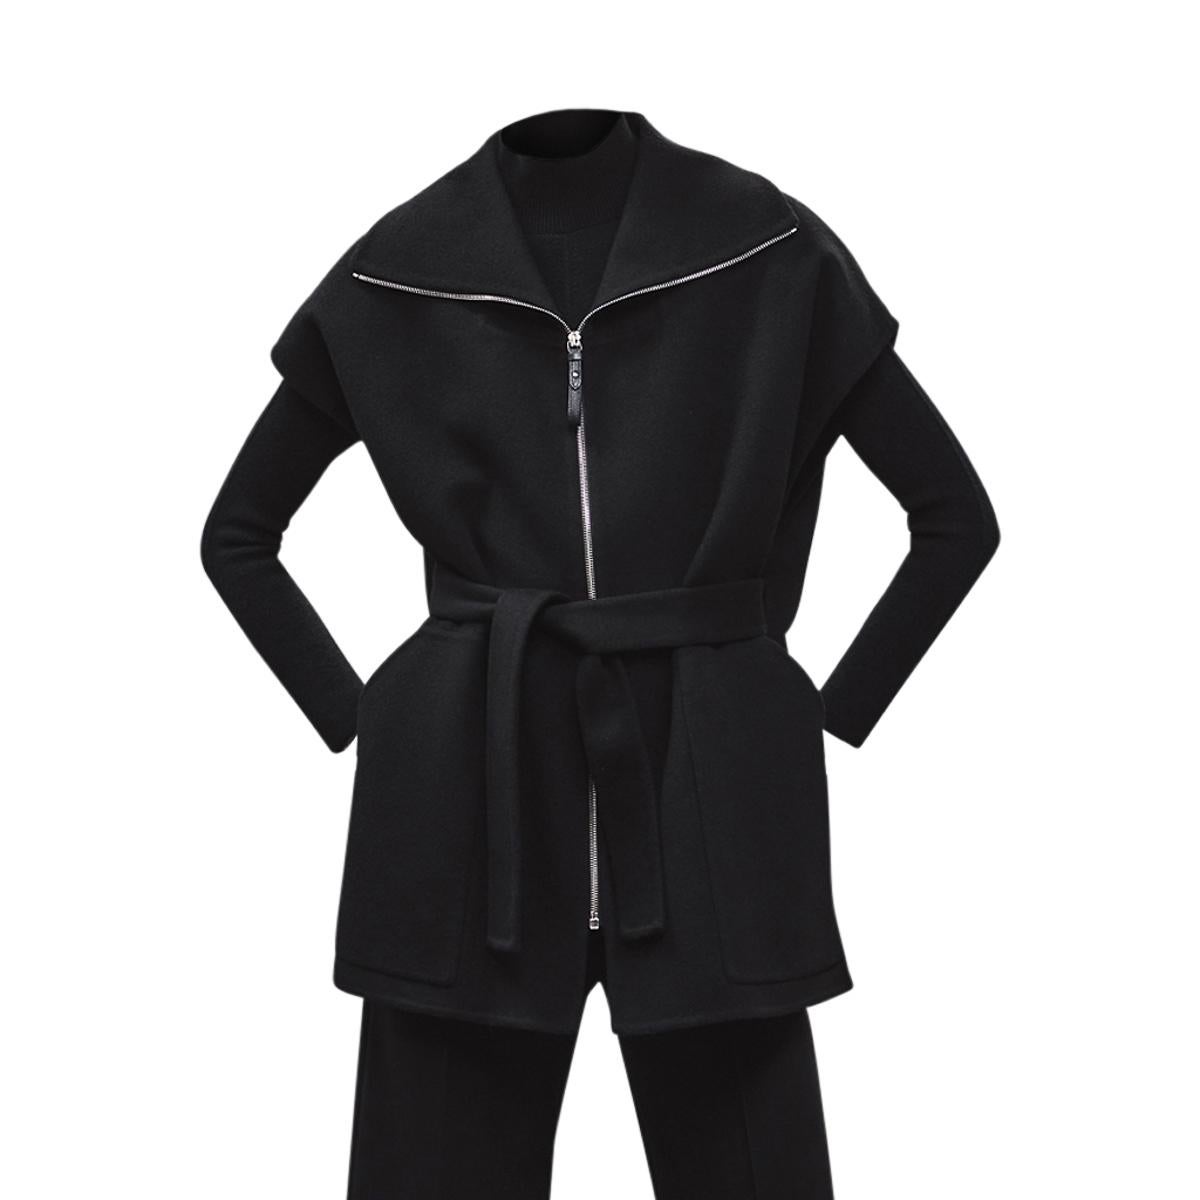 Hermes Short Vest Black Zip Double Face Cashmere 38 / 6 For Sale 1